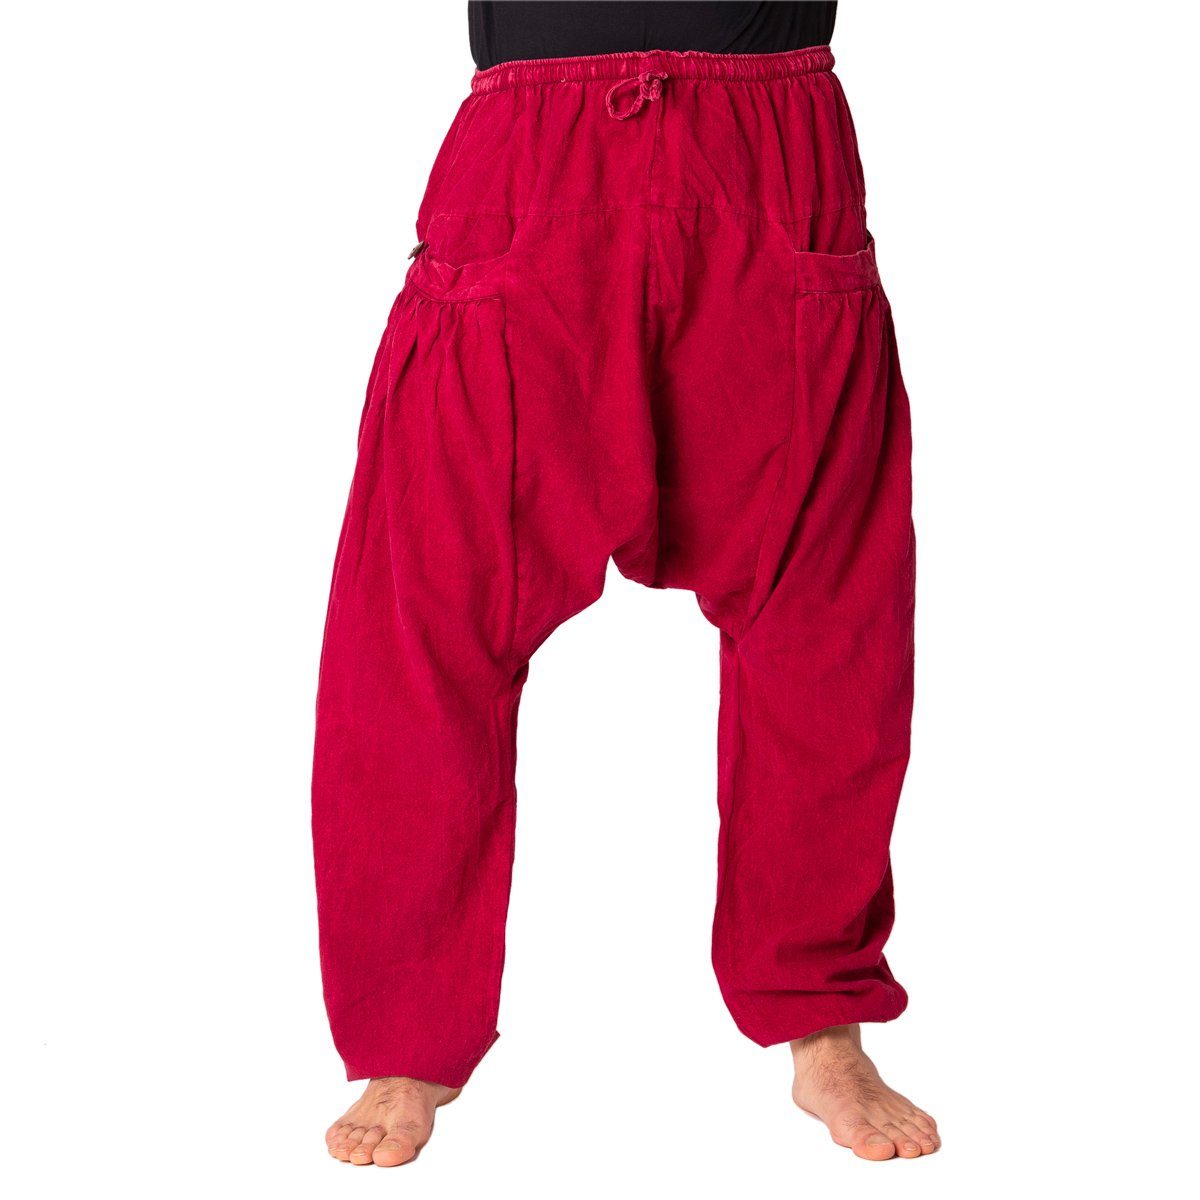 PANASIAM Wellnesshose Chillhose stonewashed im Aladin-Style aus 100% Baumwolle locker geschnittene Boho-Hose mit Taschen Freizeithose für Damen und Herren bordeaux rot